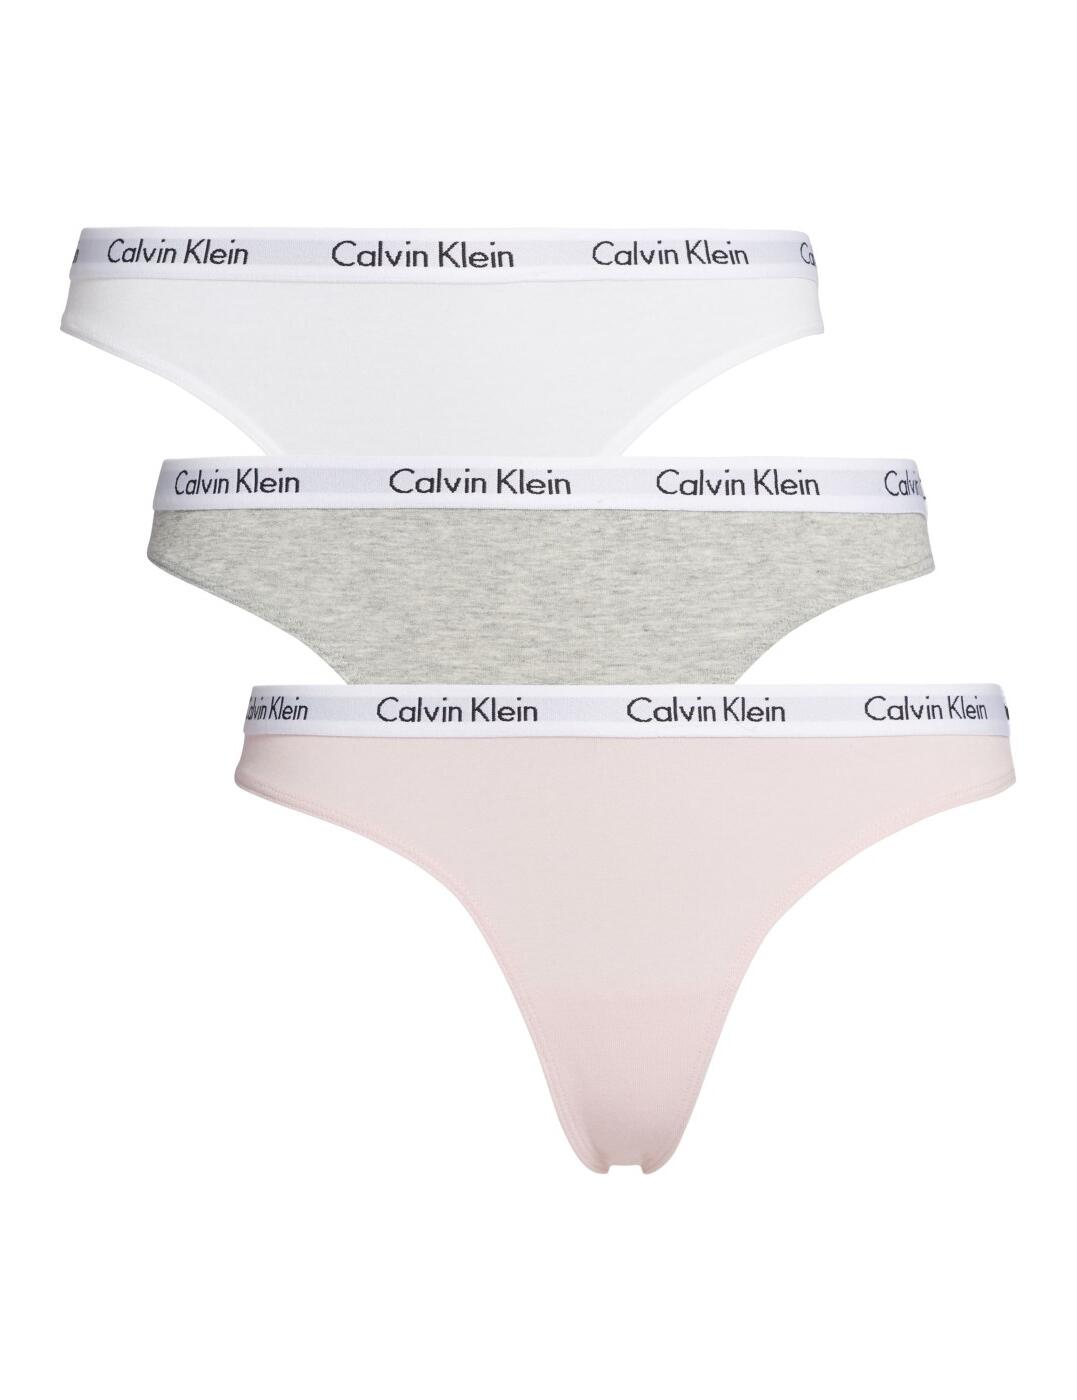 000QD3587E Calvin Klein Carousel Thong 3 Pack - QD3587E Bubble  Gum/White/Grey Heather